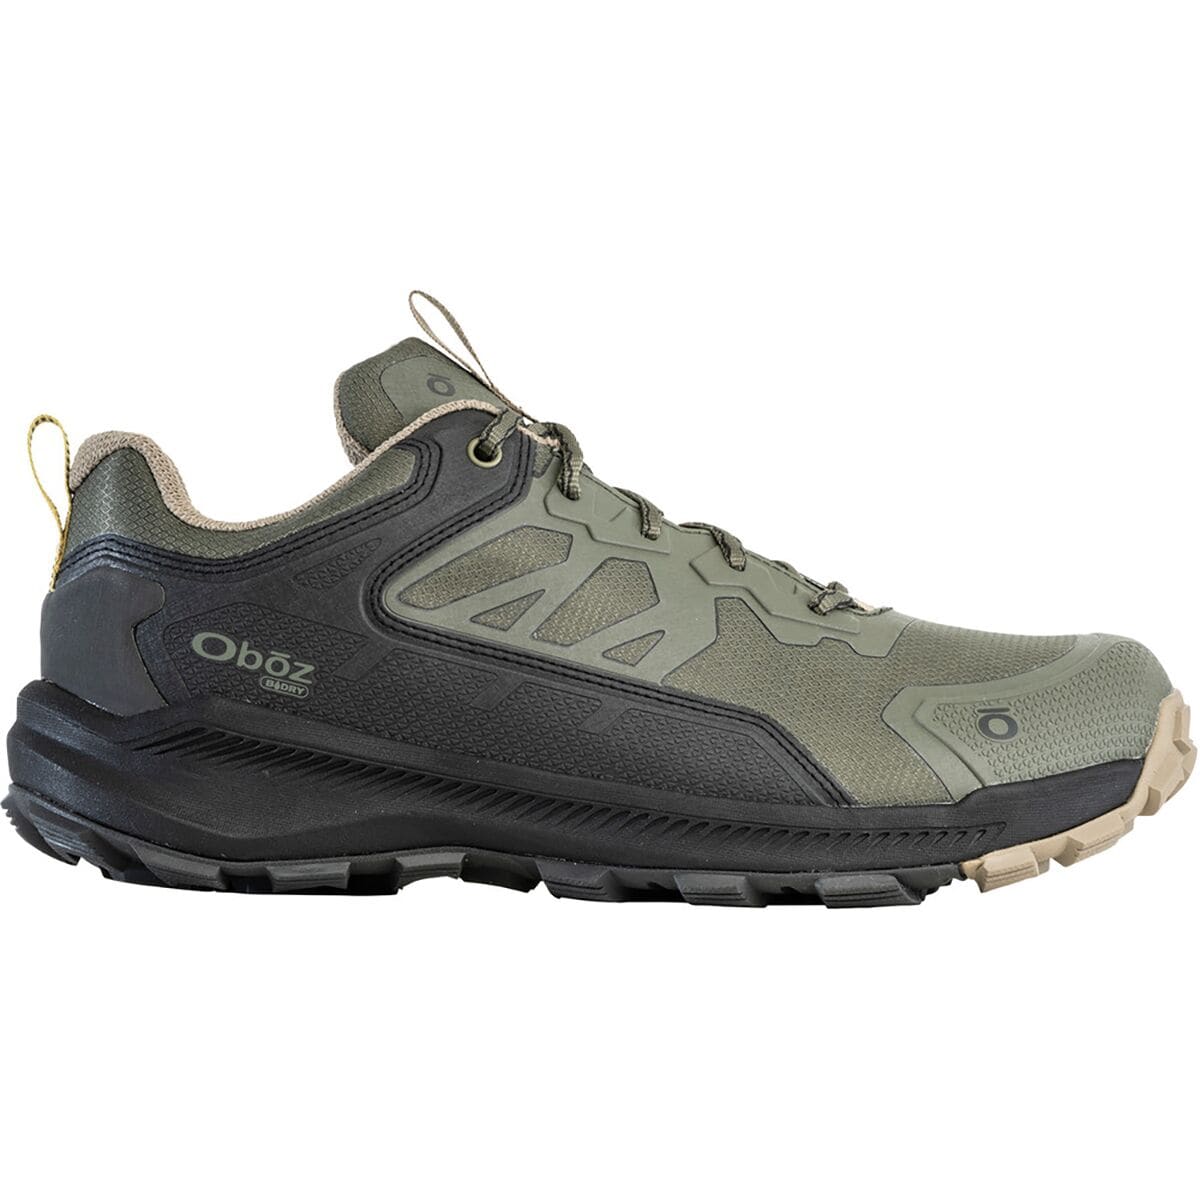 Oboz Katabatic Low B-DRY Hiking Shoe - Men's